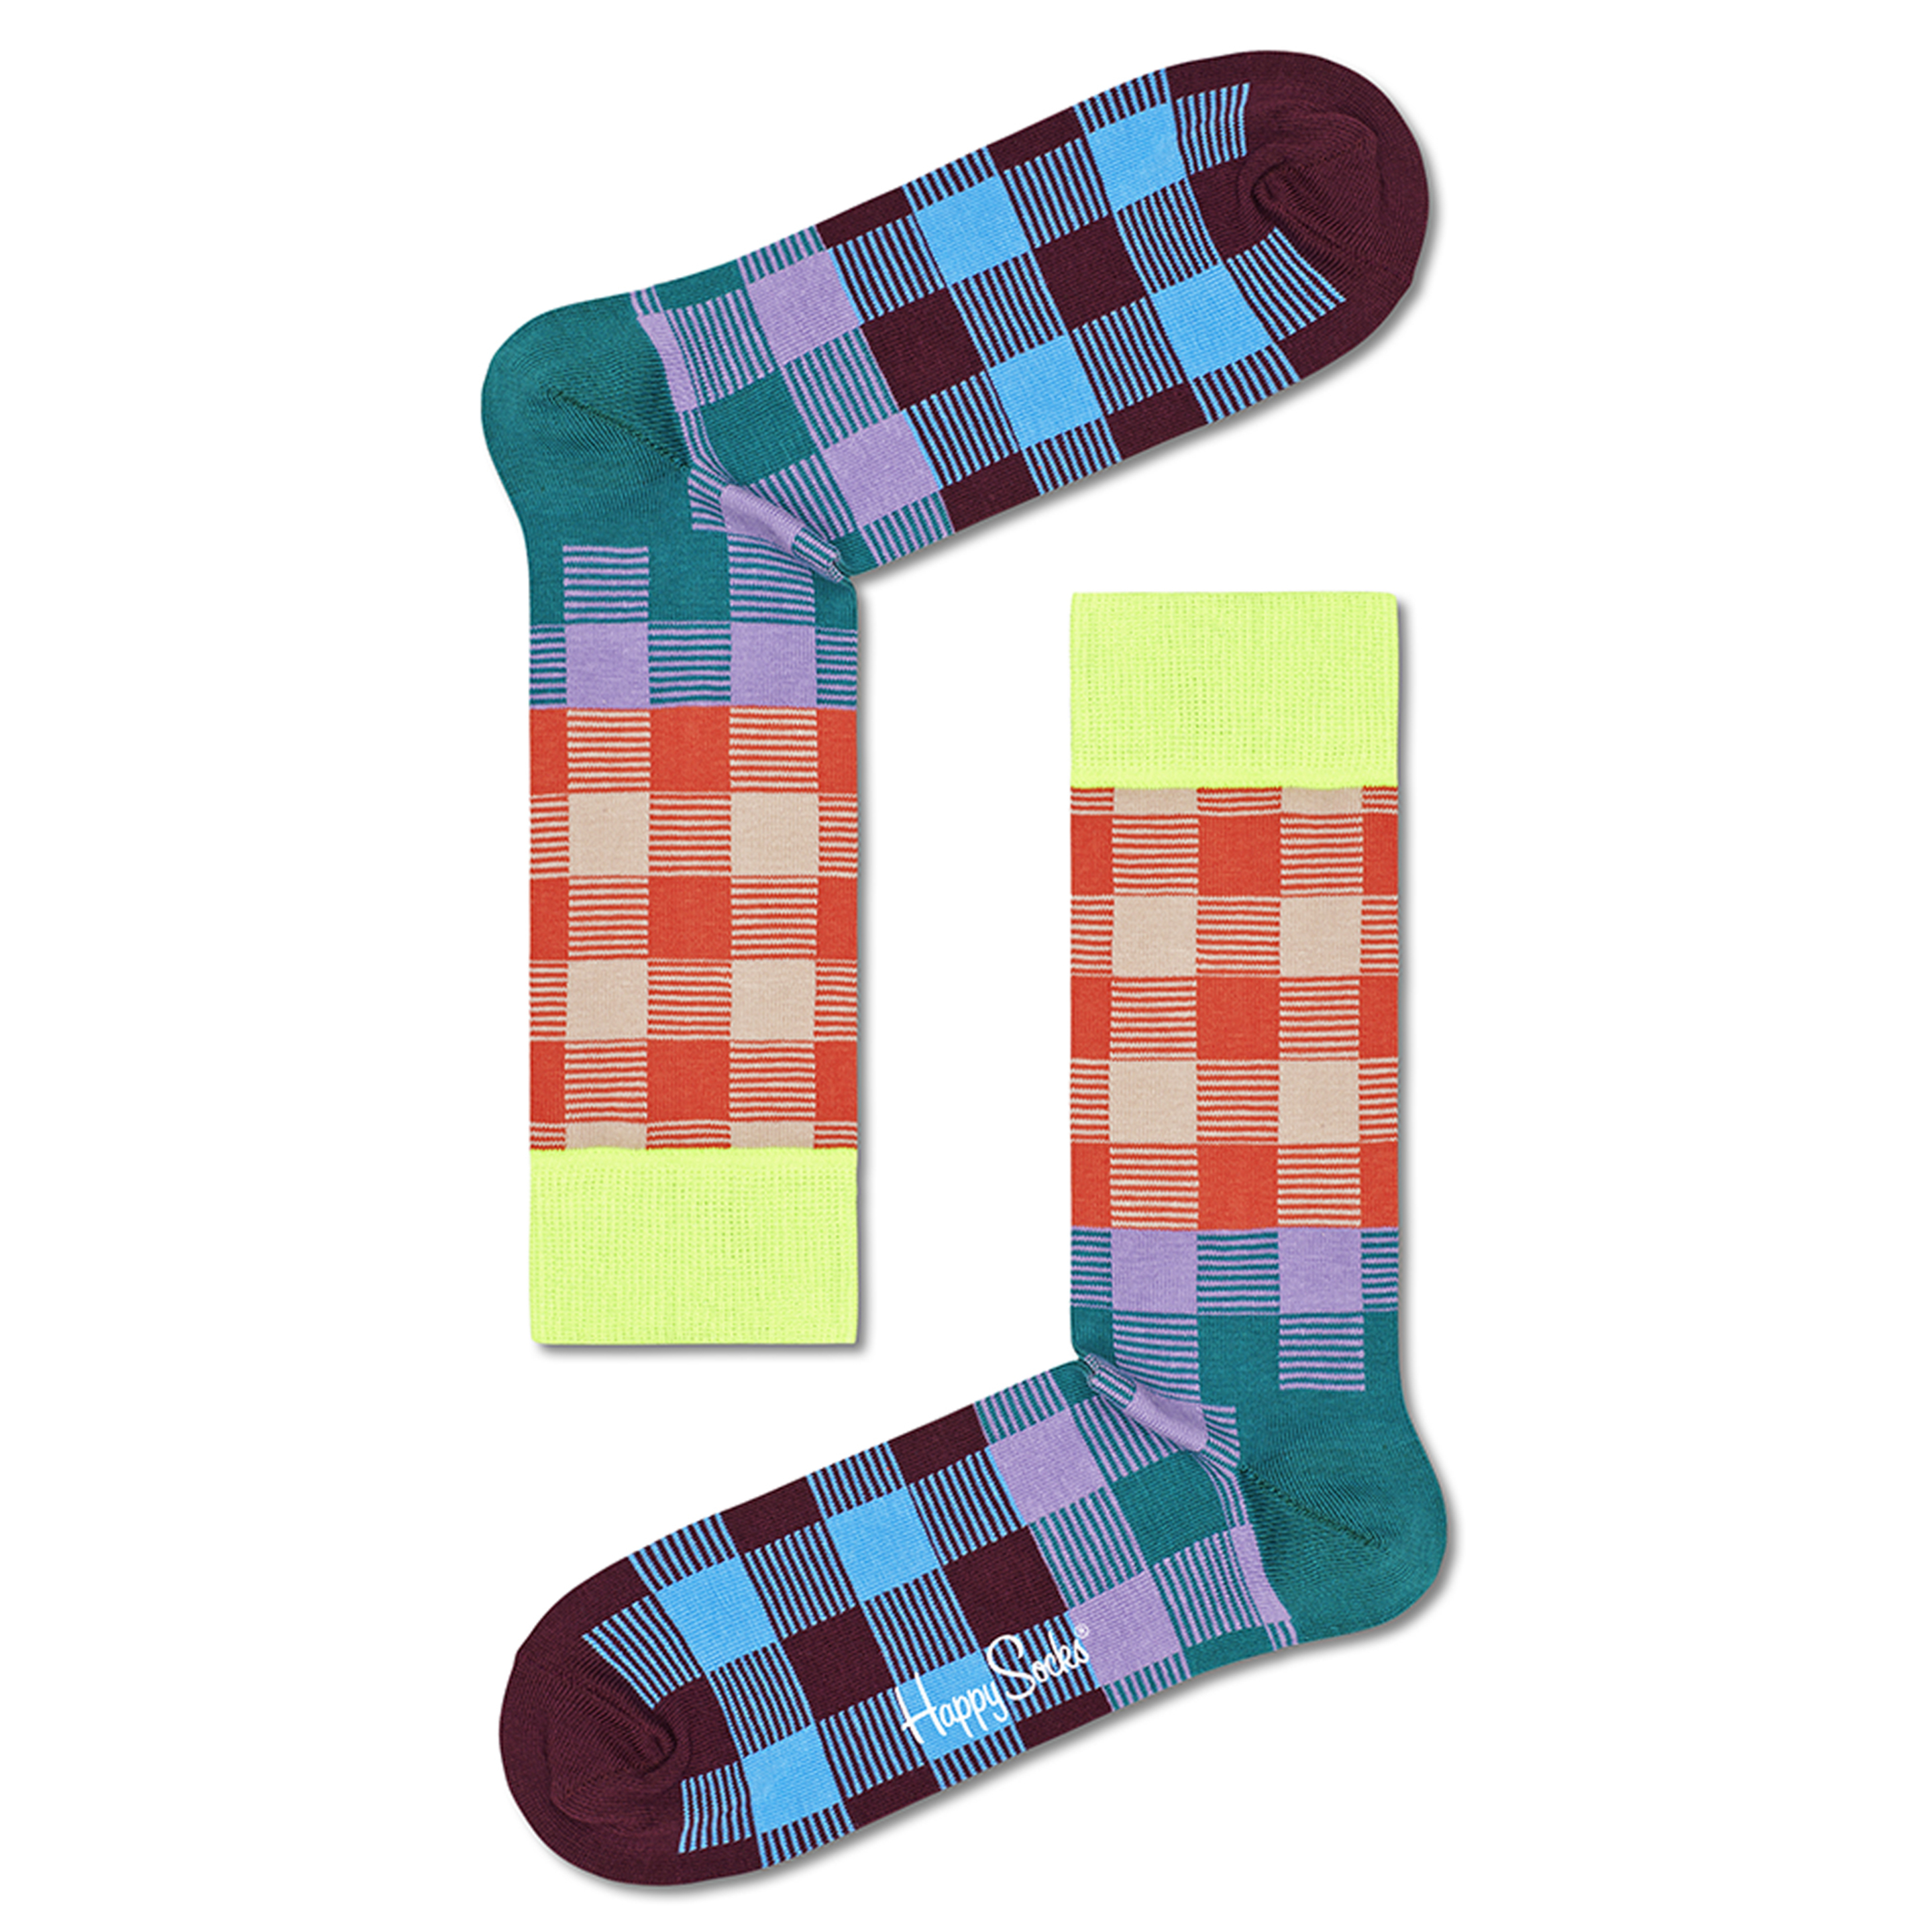 Meias Happy Socks Toalha - multicolor - 